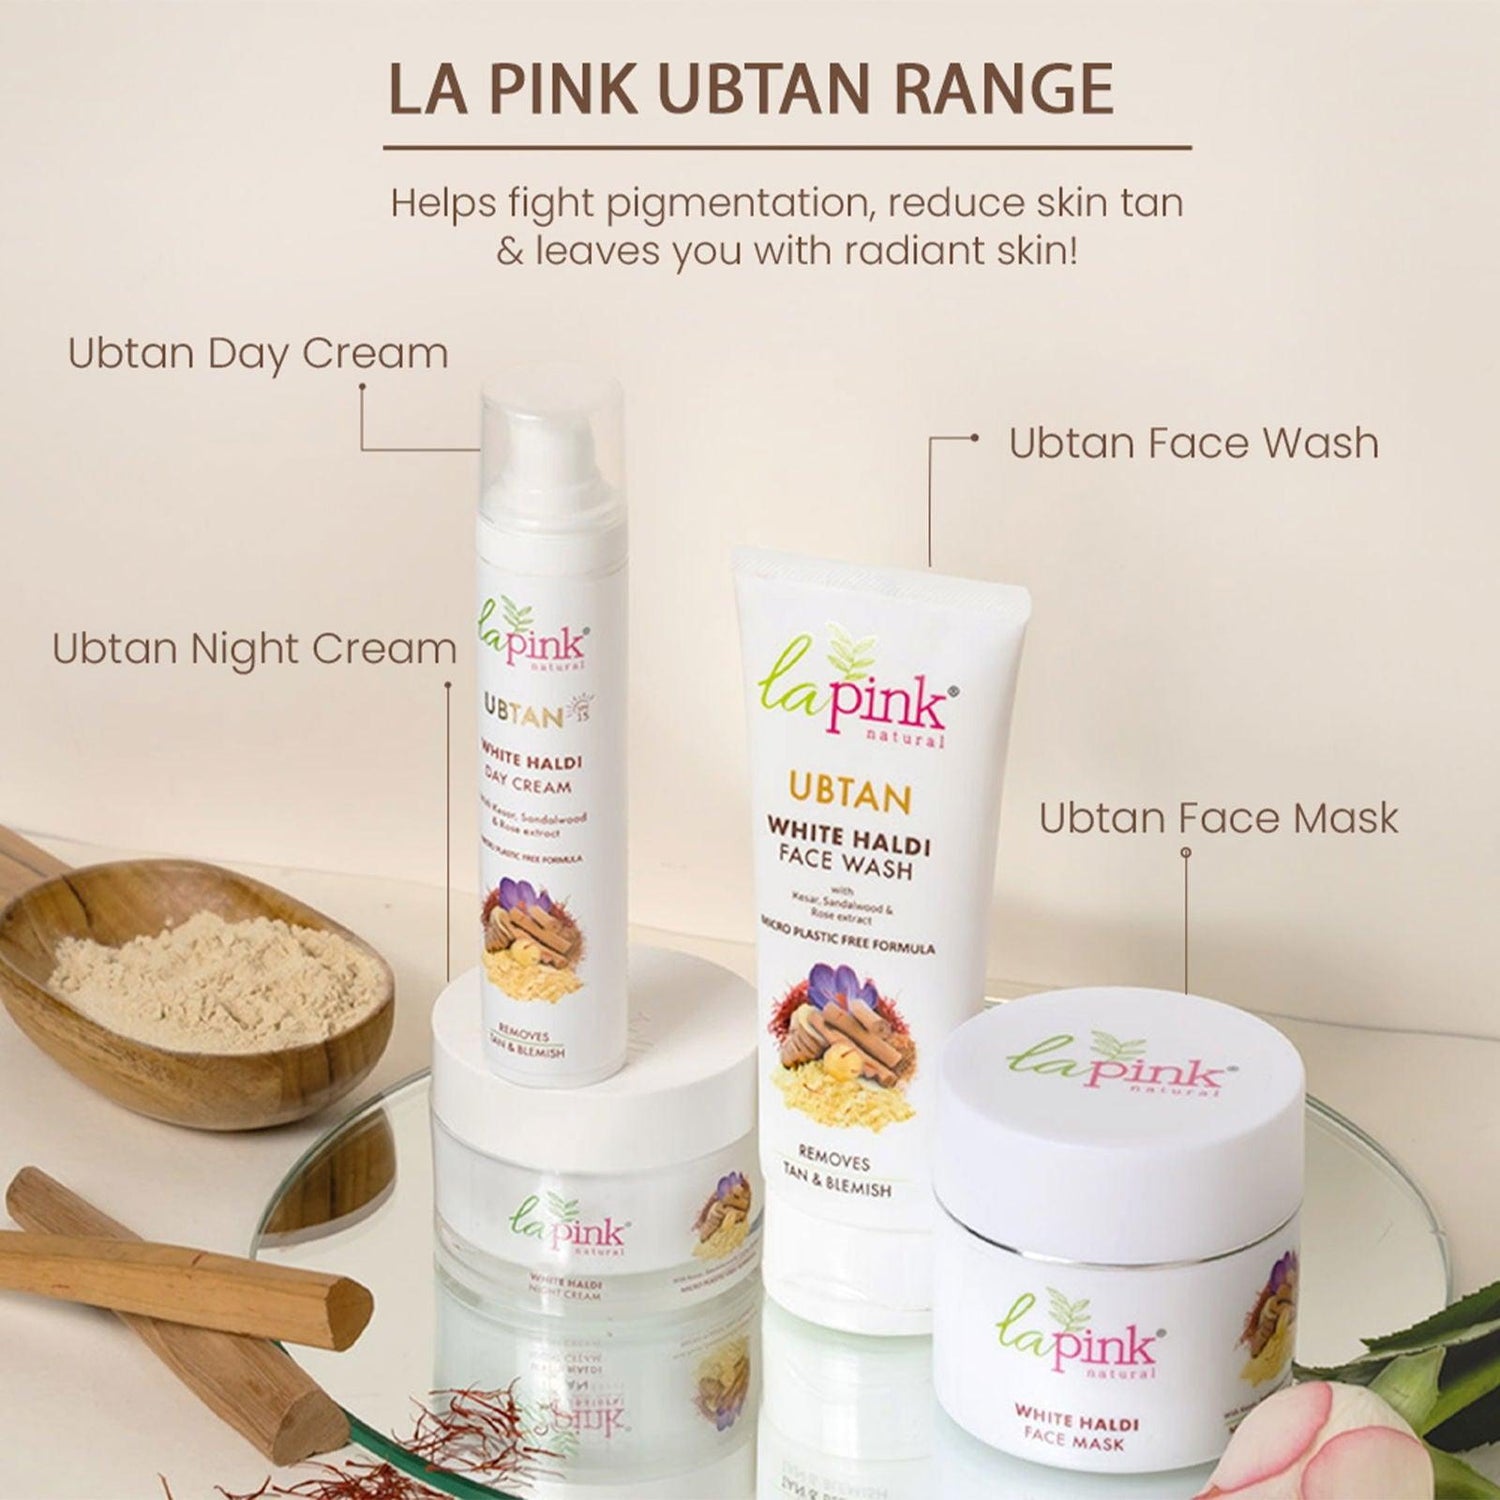 Ubtan Face Mask 100 gm (Pack of 2) - La Pink